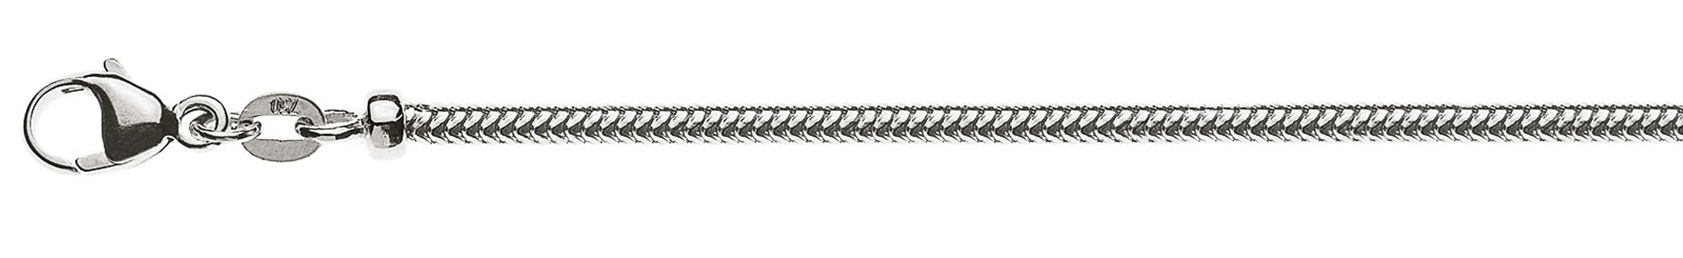 AURONOS Prestige Halskette Weissgold 18K Schlangenkette 42cm 2.4mm